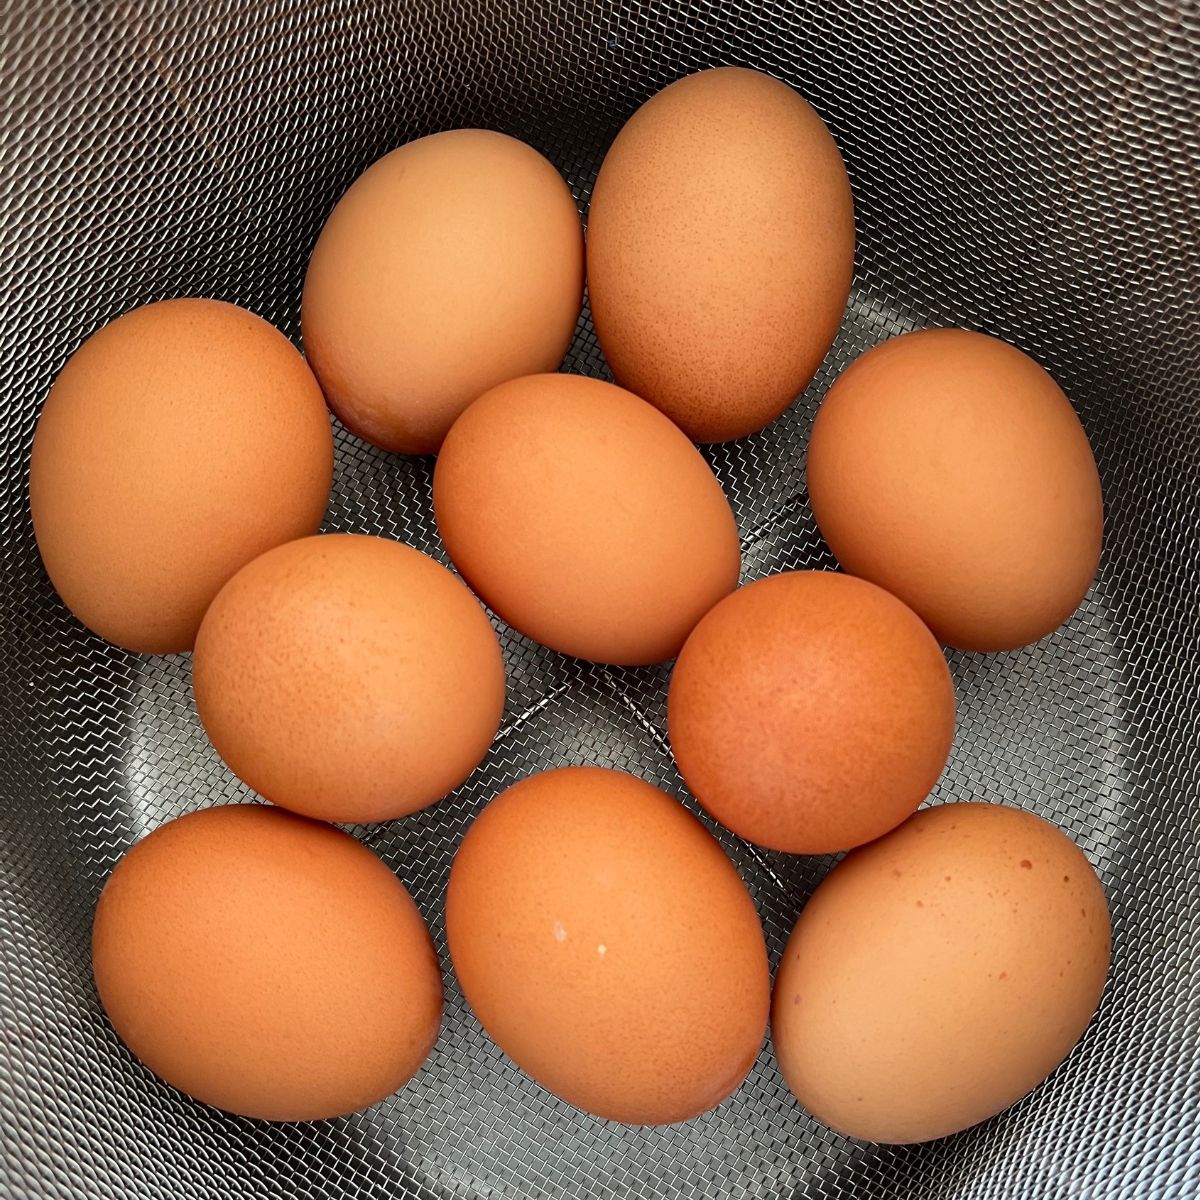 brązowe jajka w metalowym koszu.